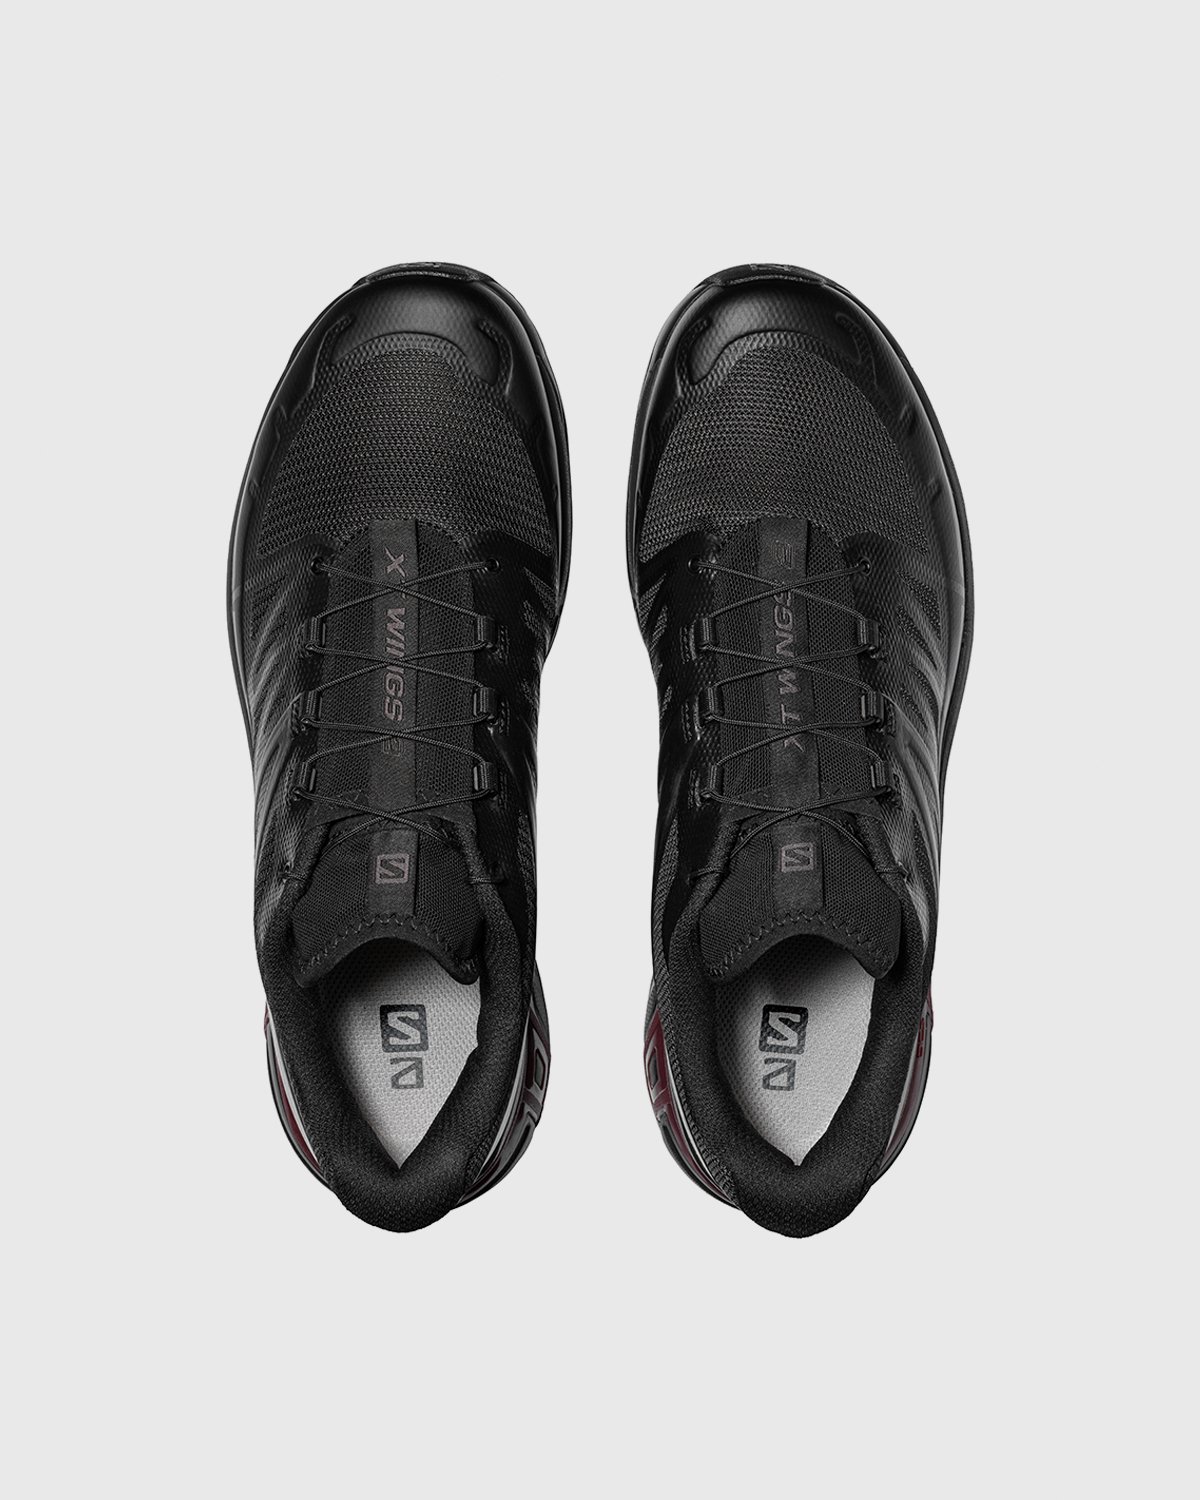 Salomon - XT-Wings 2 Advanced Black - Footwear - Black - Image 4